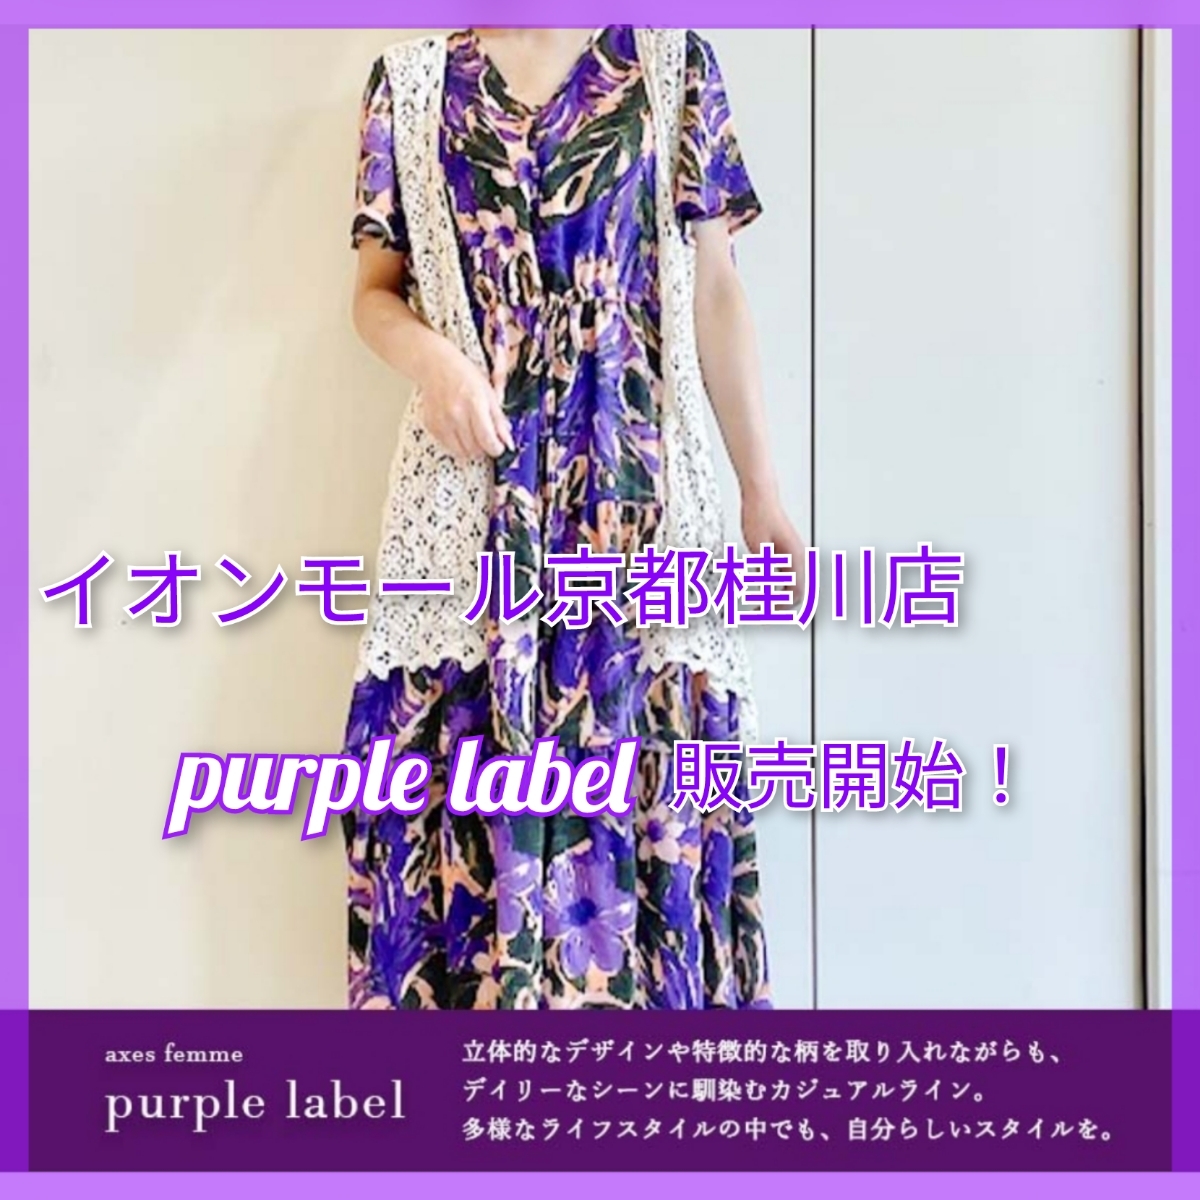 purple label取り扱いスタート𓂃𓈒💜